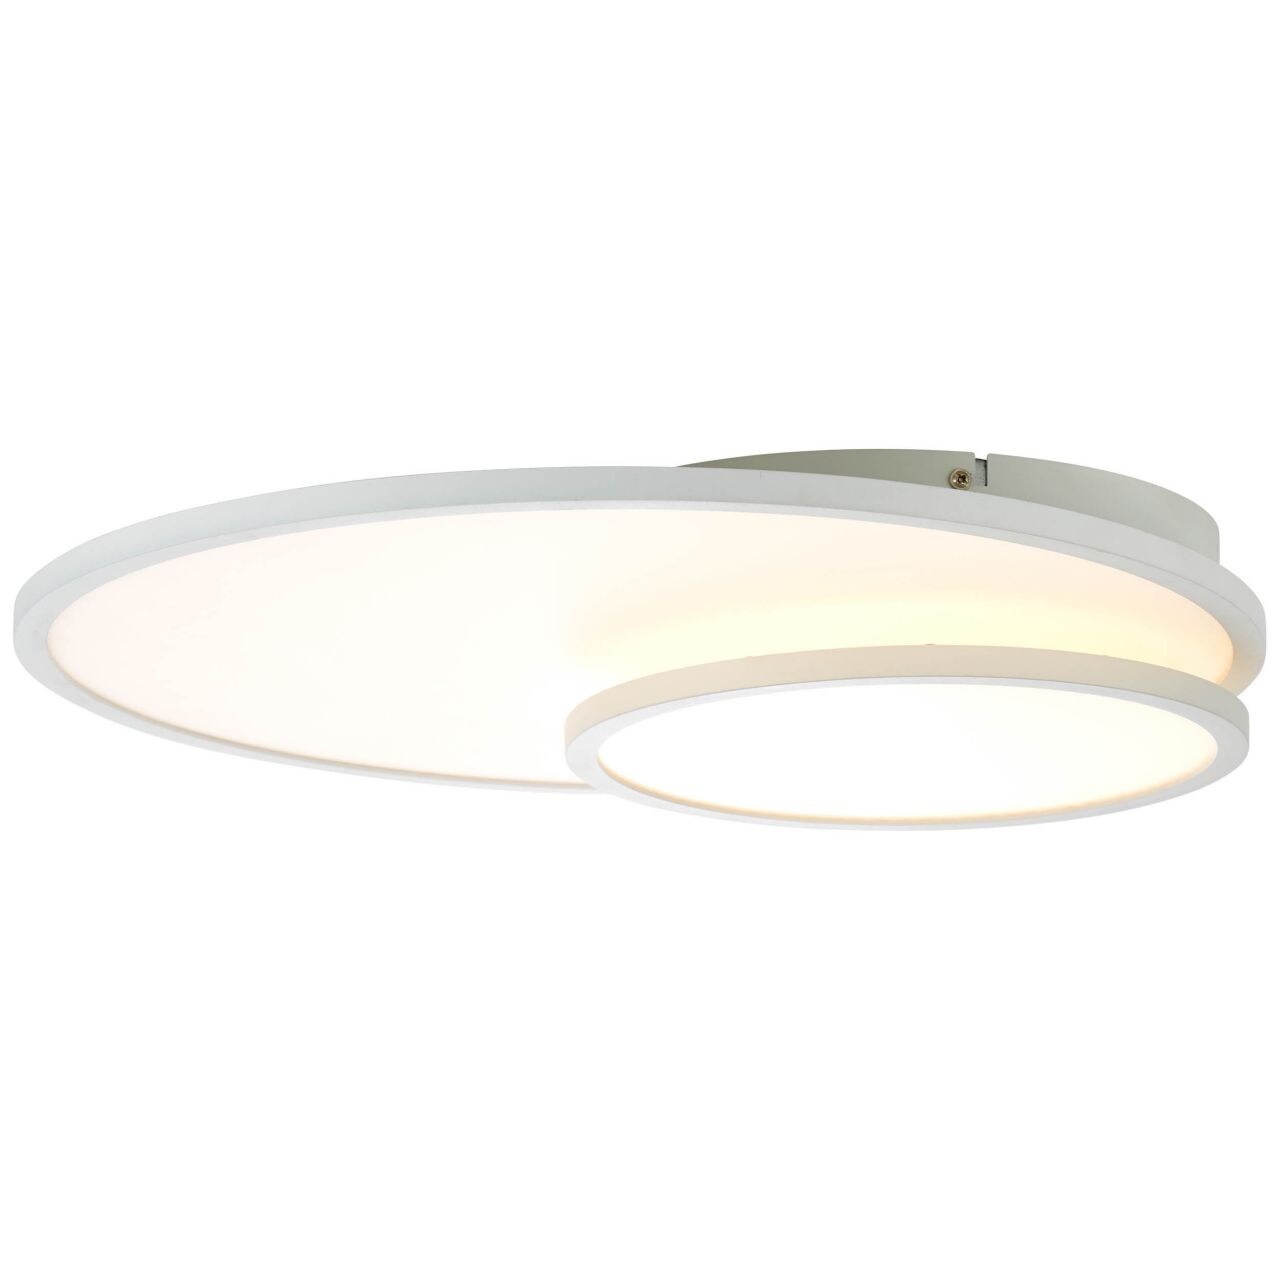 BRILLIANT Lampe Bility LED Deckenaufbau-Paneel 61x45cm weiß easyDim   1x 36W LED integriert, (3960lm, 3000K)   EasyDim: 